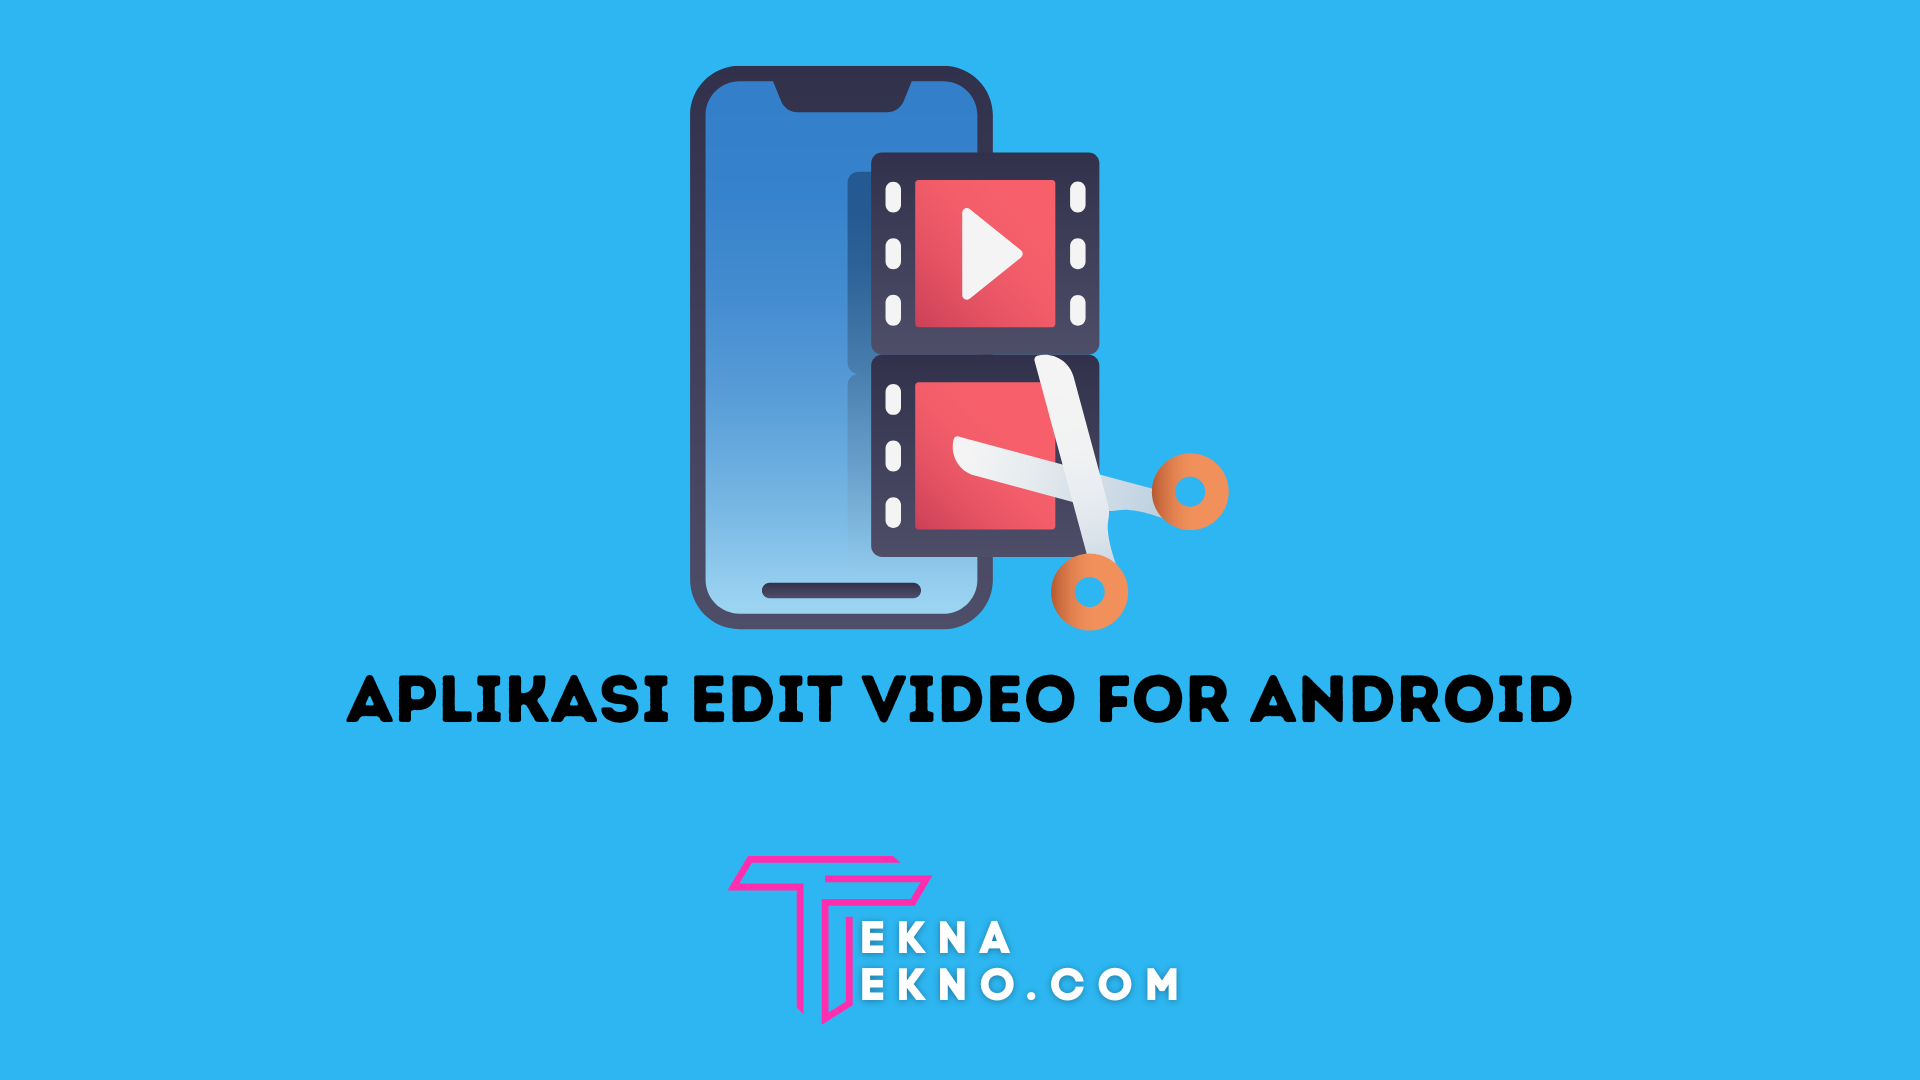 Aplikasi Edit Video Tanpa Watermark di Android